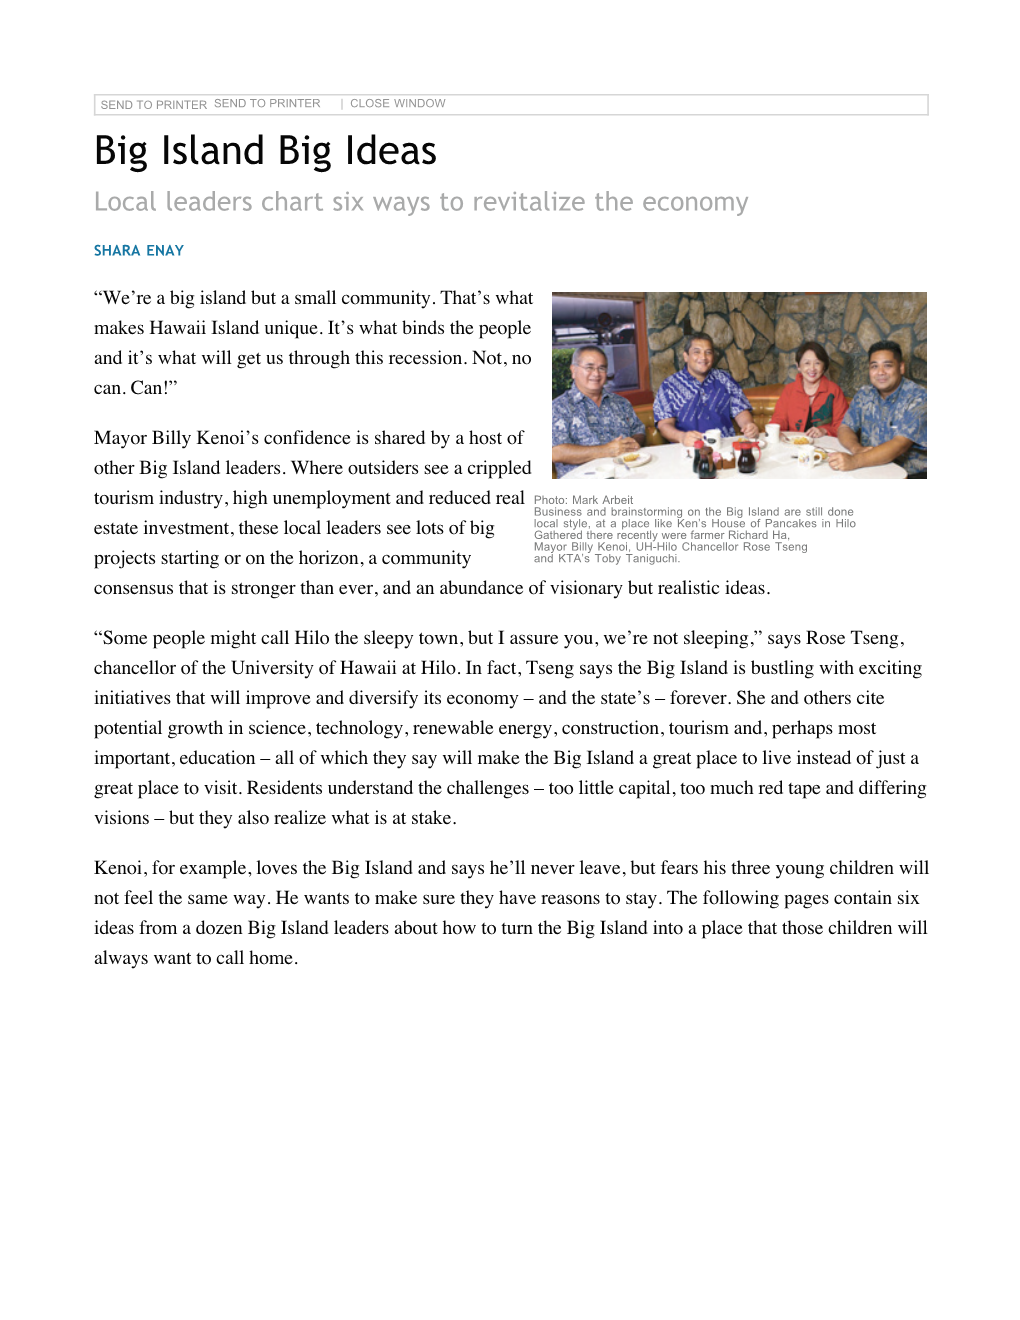 Hawaii Business | Big Island Big Ideas